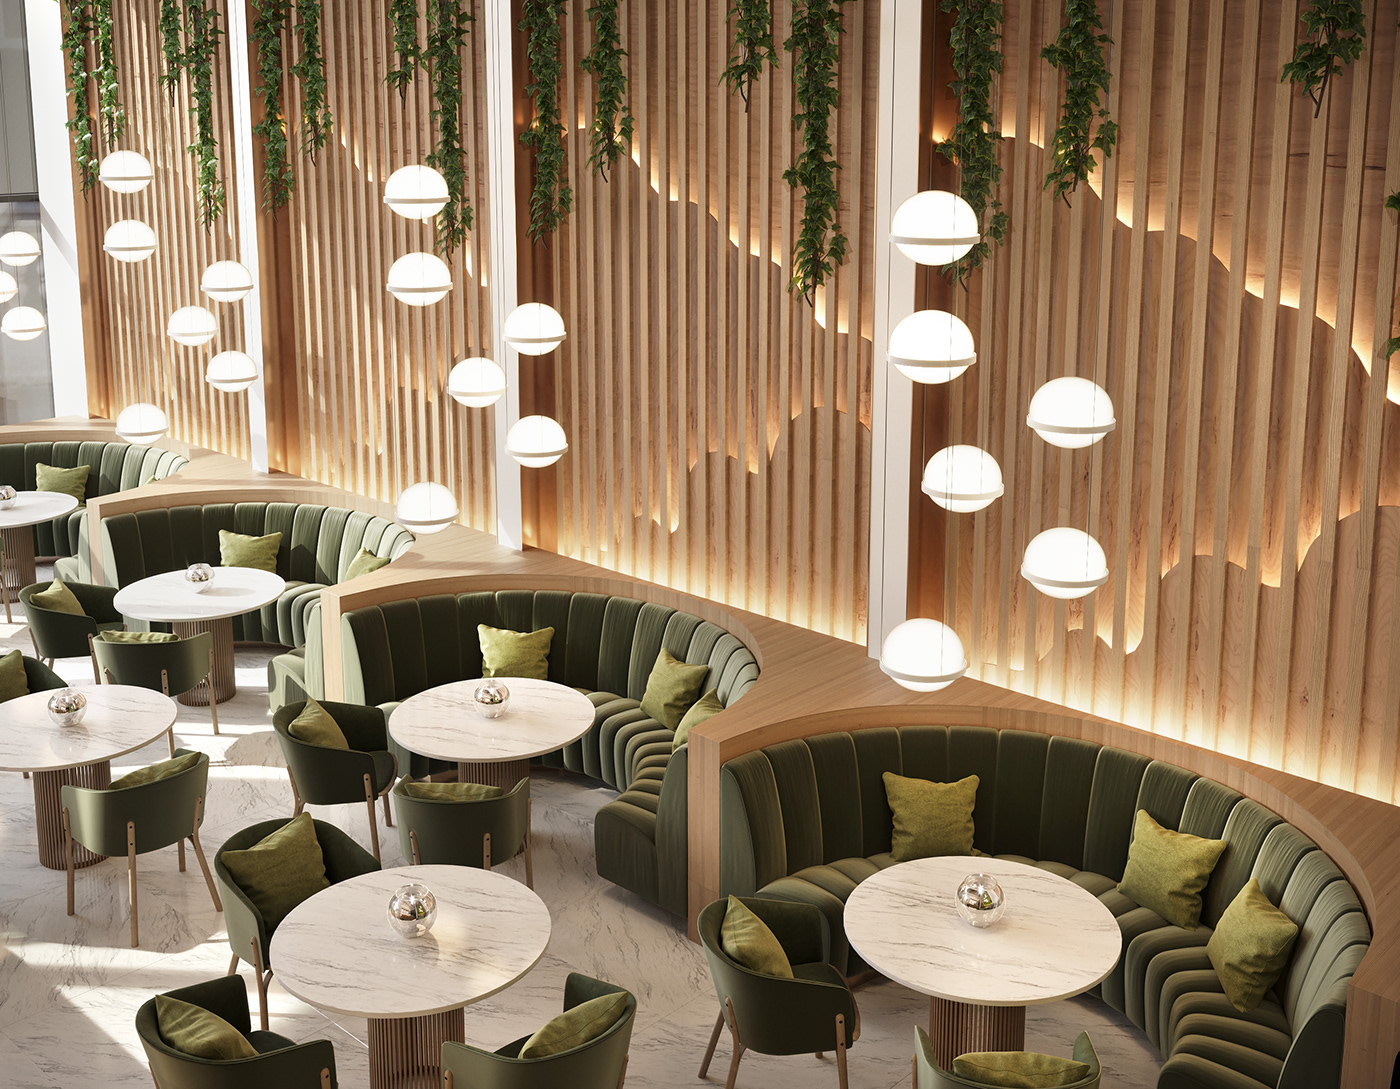 cafe design design interior Interior PUBLIC PLACE Render restaurant visual